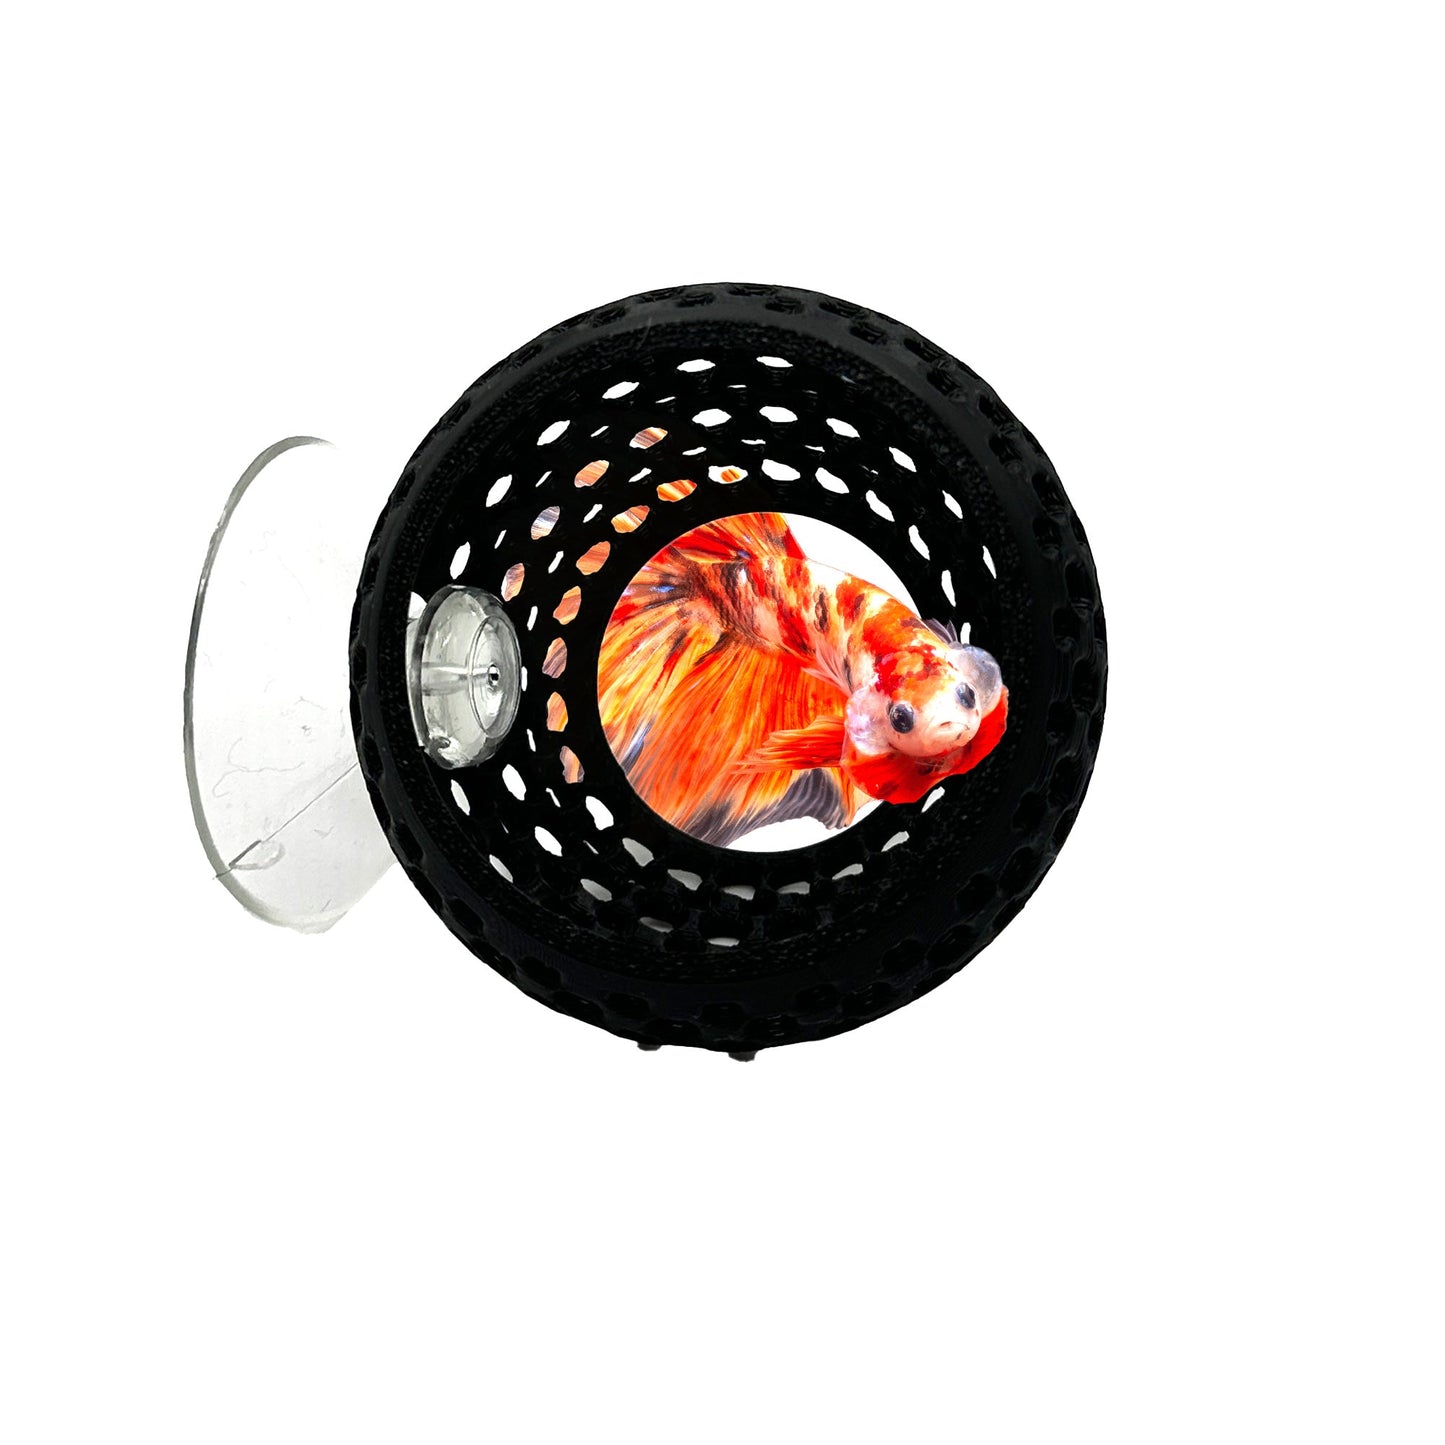 Betta Bulb Hide | Organic Betta Rest Fish Tank Ornament | CTWPets™ - Wild Pet Supply